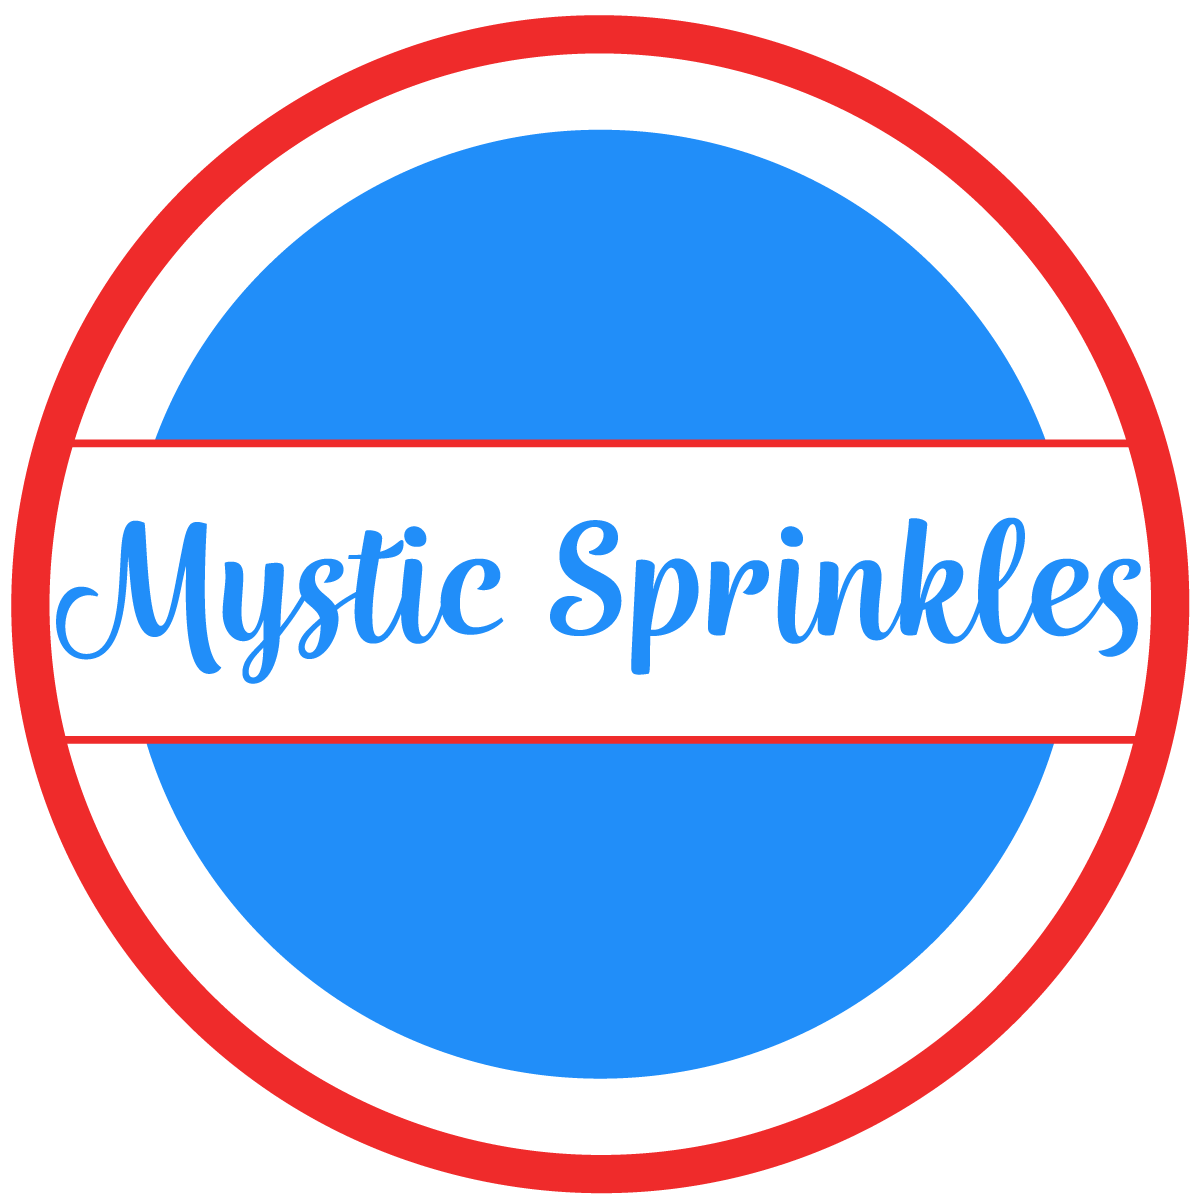 Mystic Sprinkles